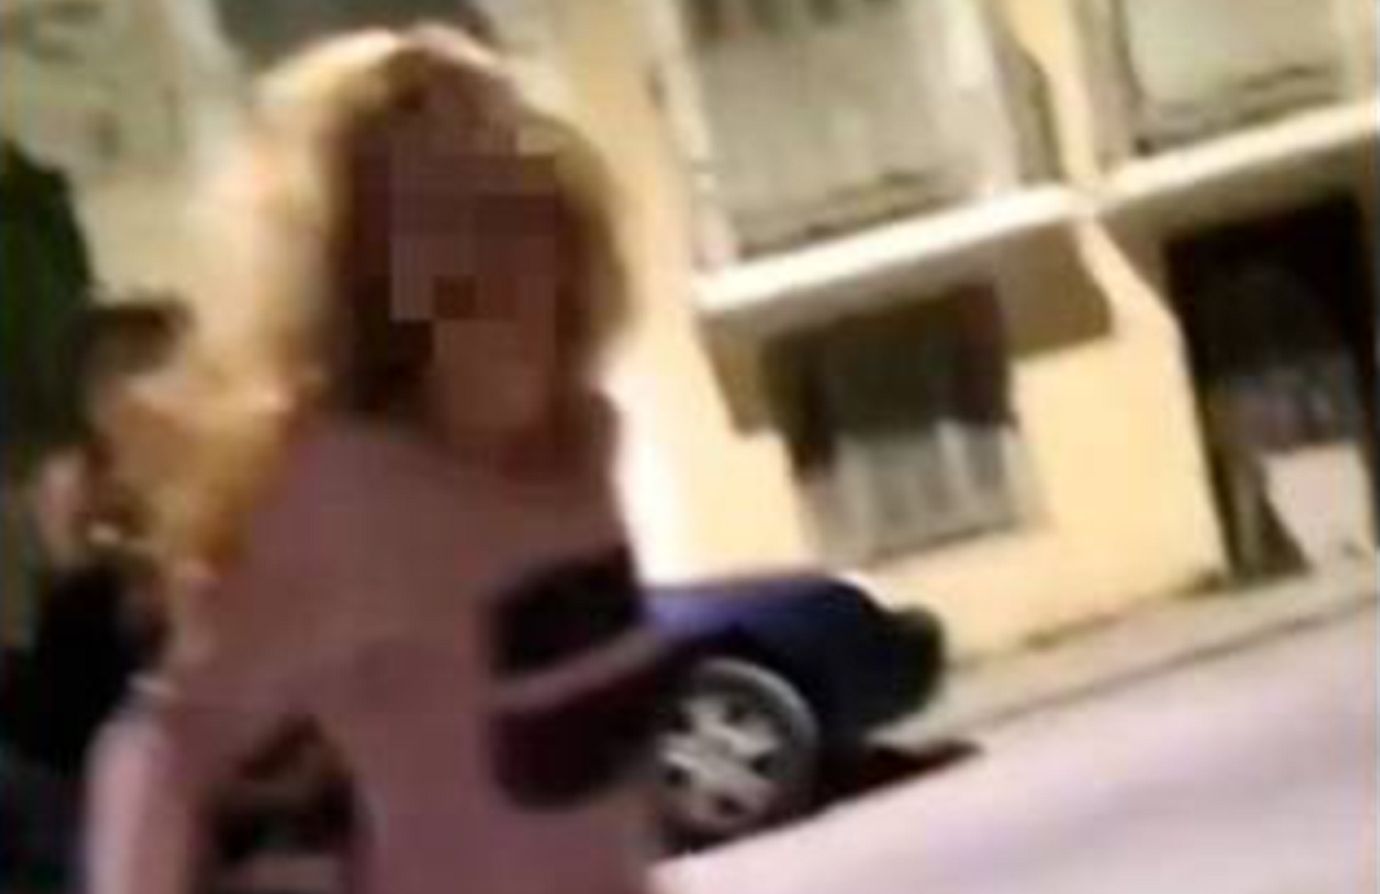 Πώς σώθηκε η γυναίκα που πήδηξε από μπαλκόνι στην Πάτρα για να γλιτώσει από τον σύντροφό της